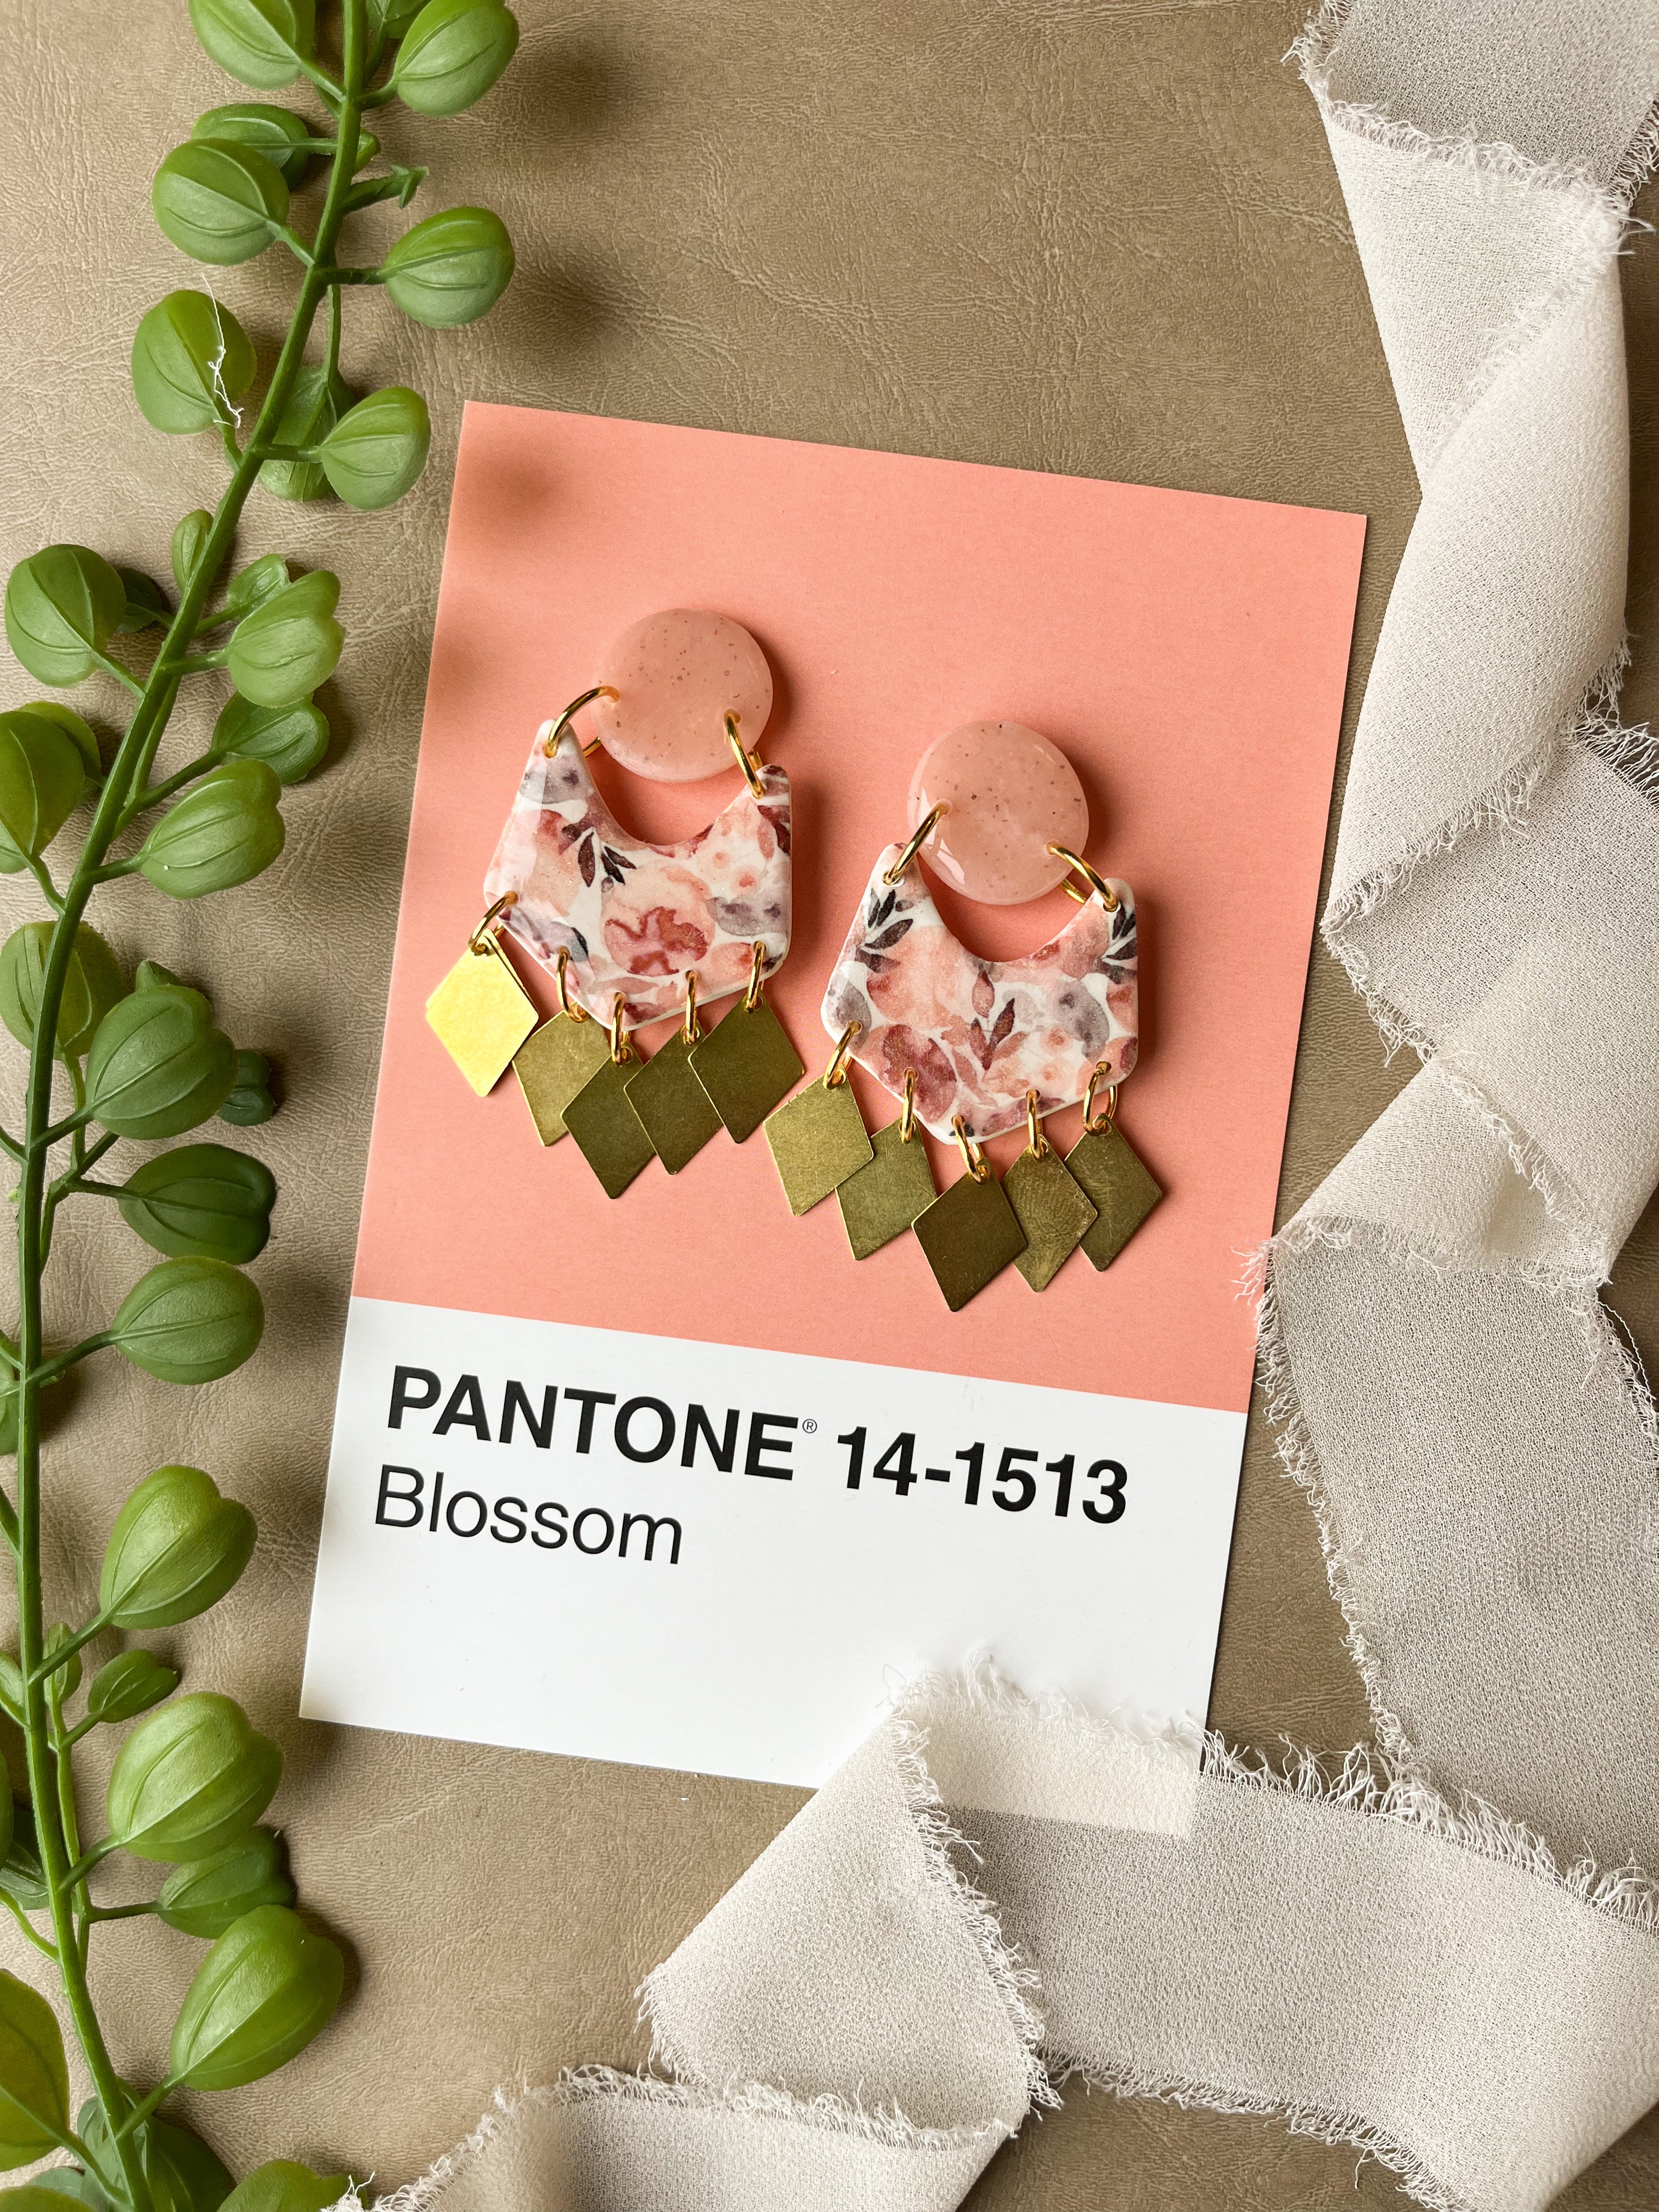 Pantone 14-1513 Blossom